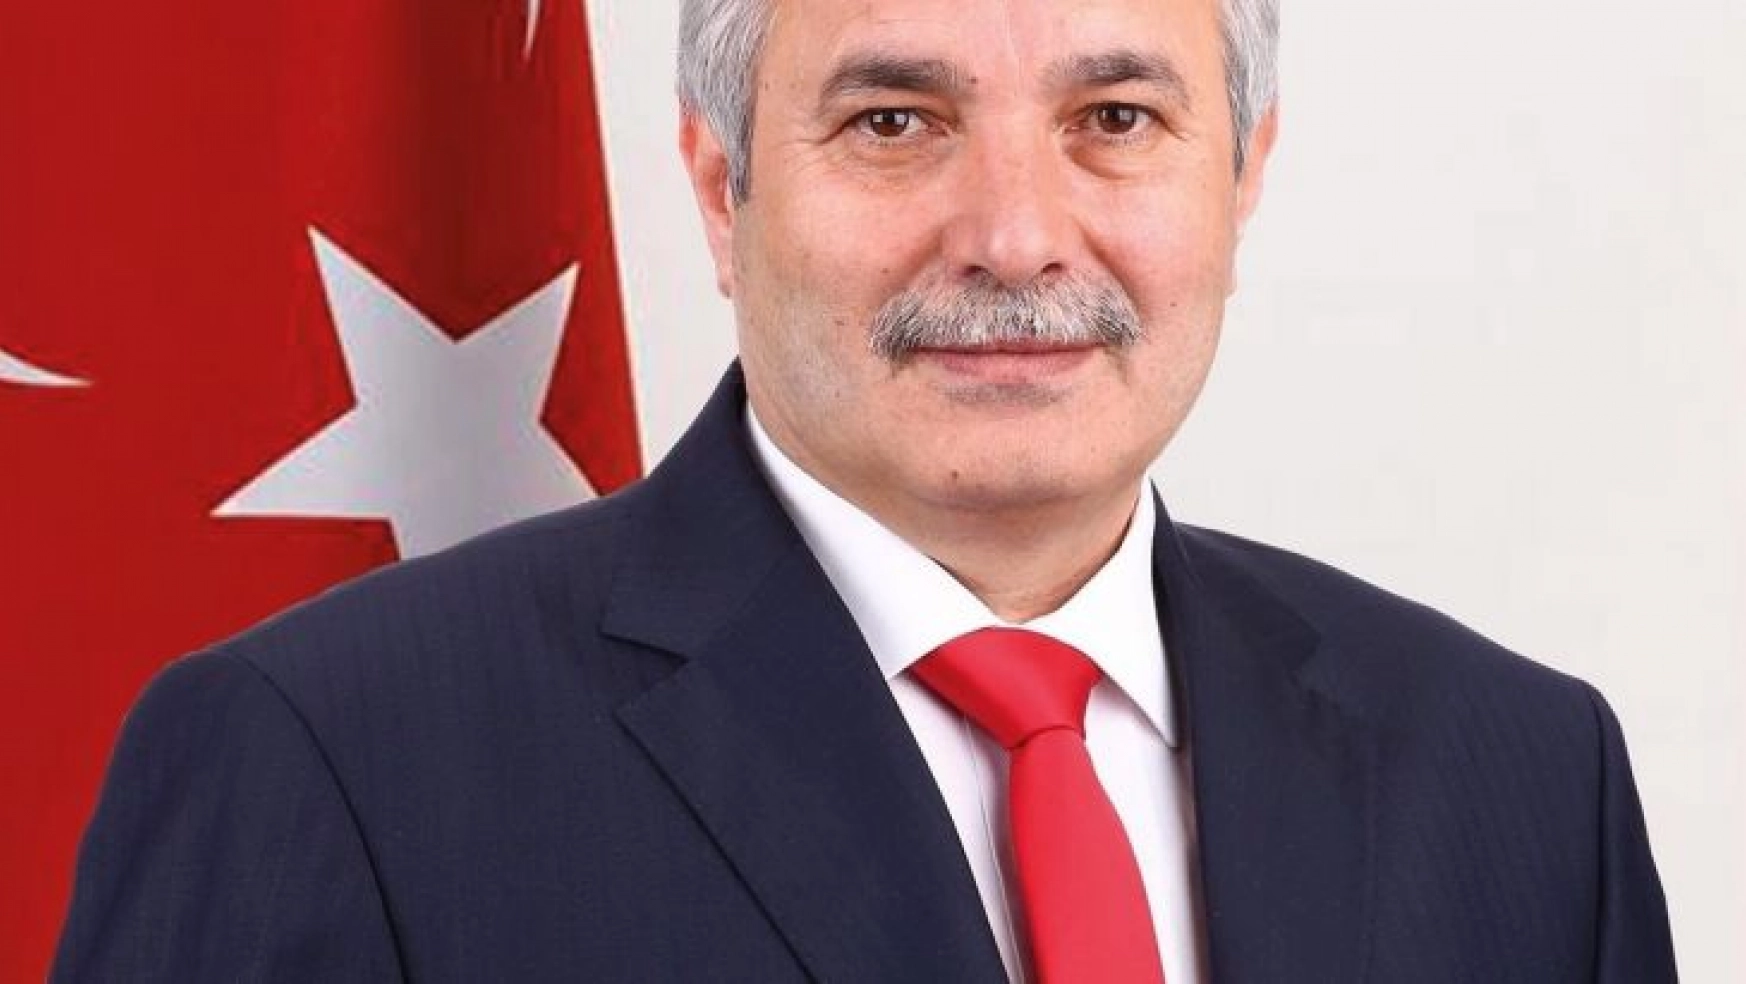 Kozan Belediye Başkanı Özgan'dan ünlü oyuncuya tazminat davası